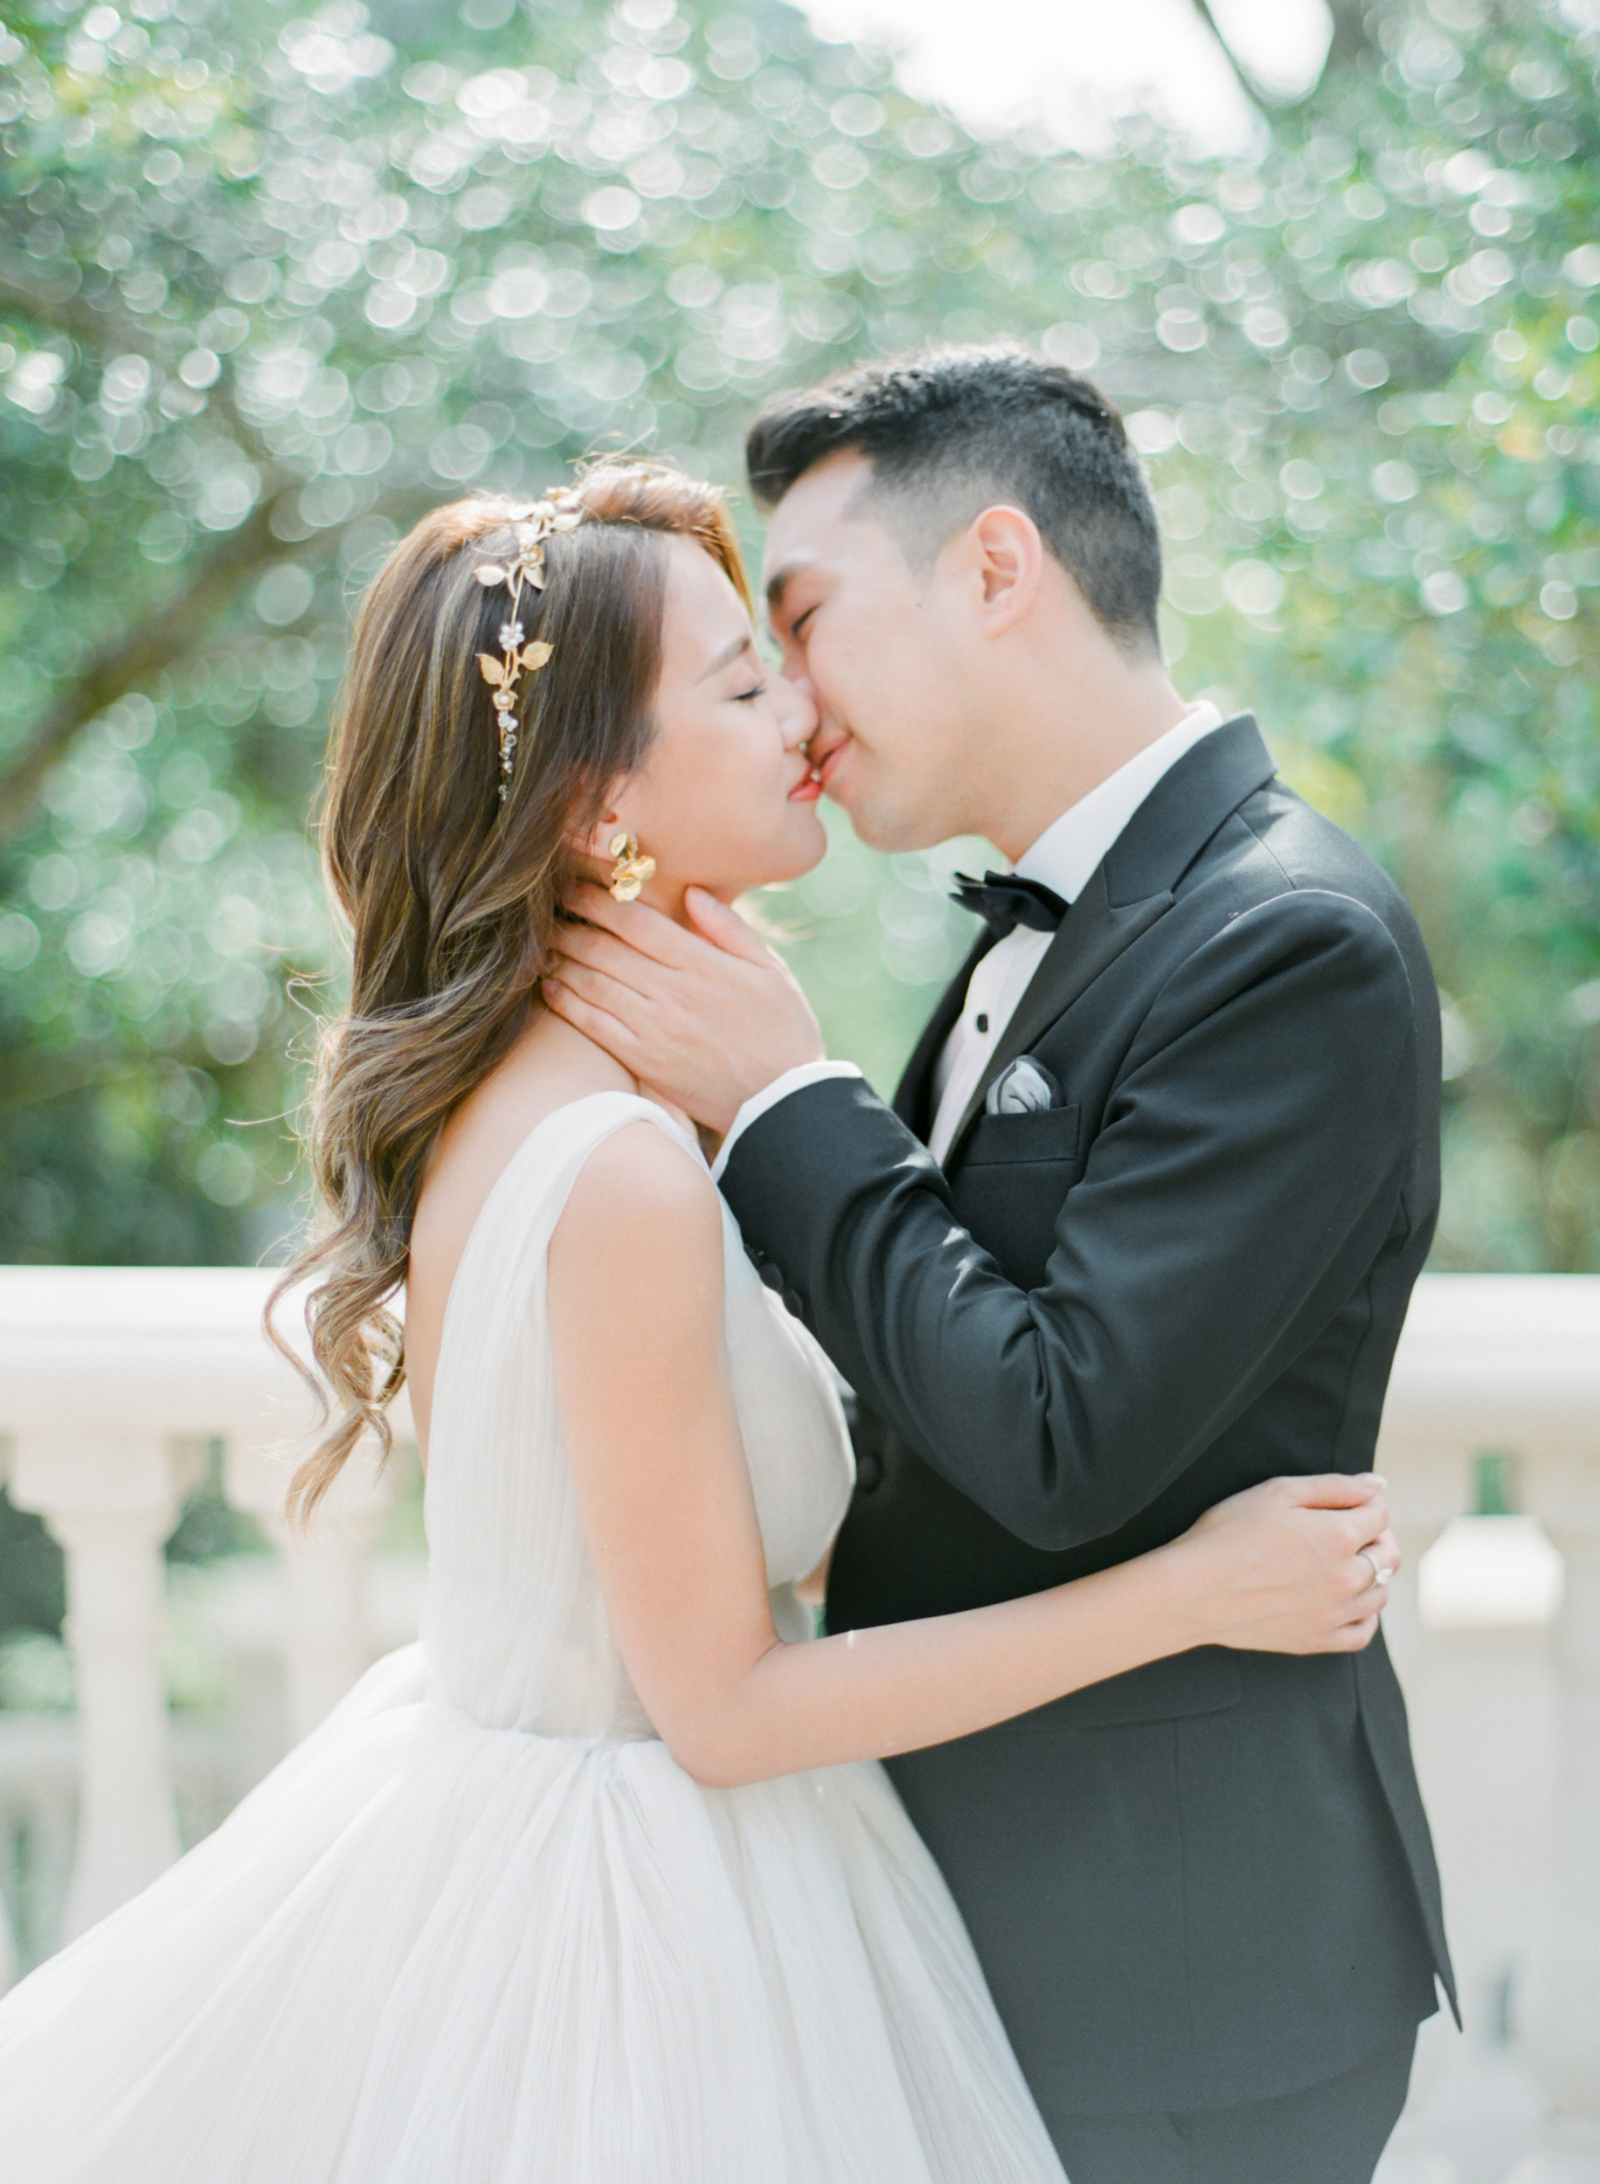 An elegant and romantic engagement shoot in Hong Kong Hong Kong Engagement pic